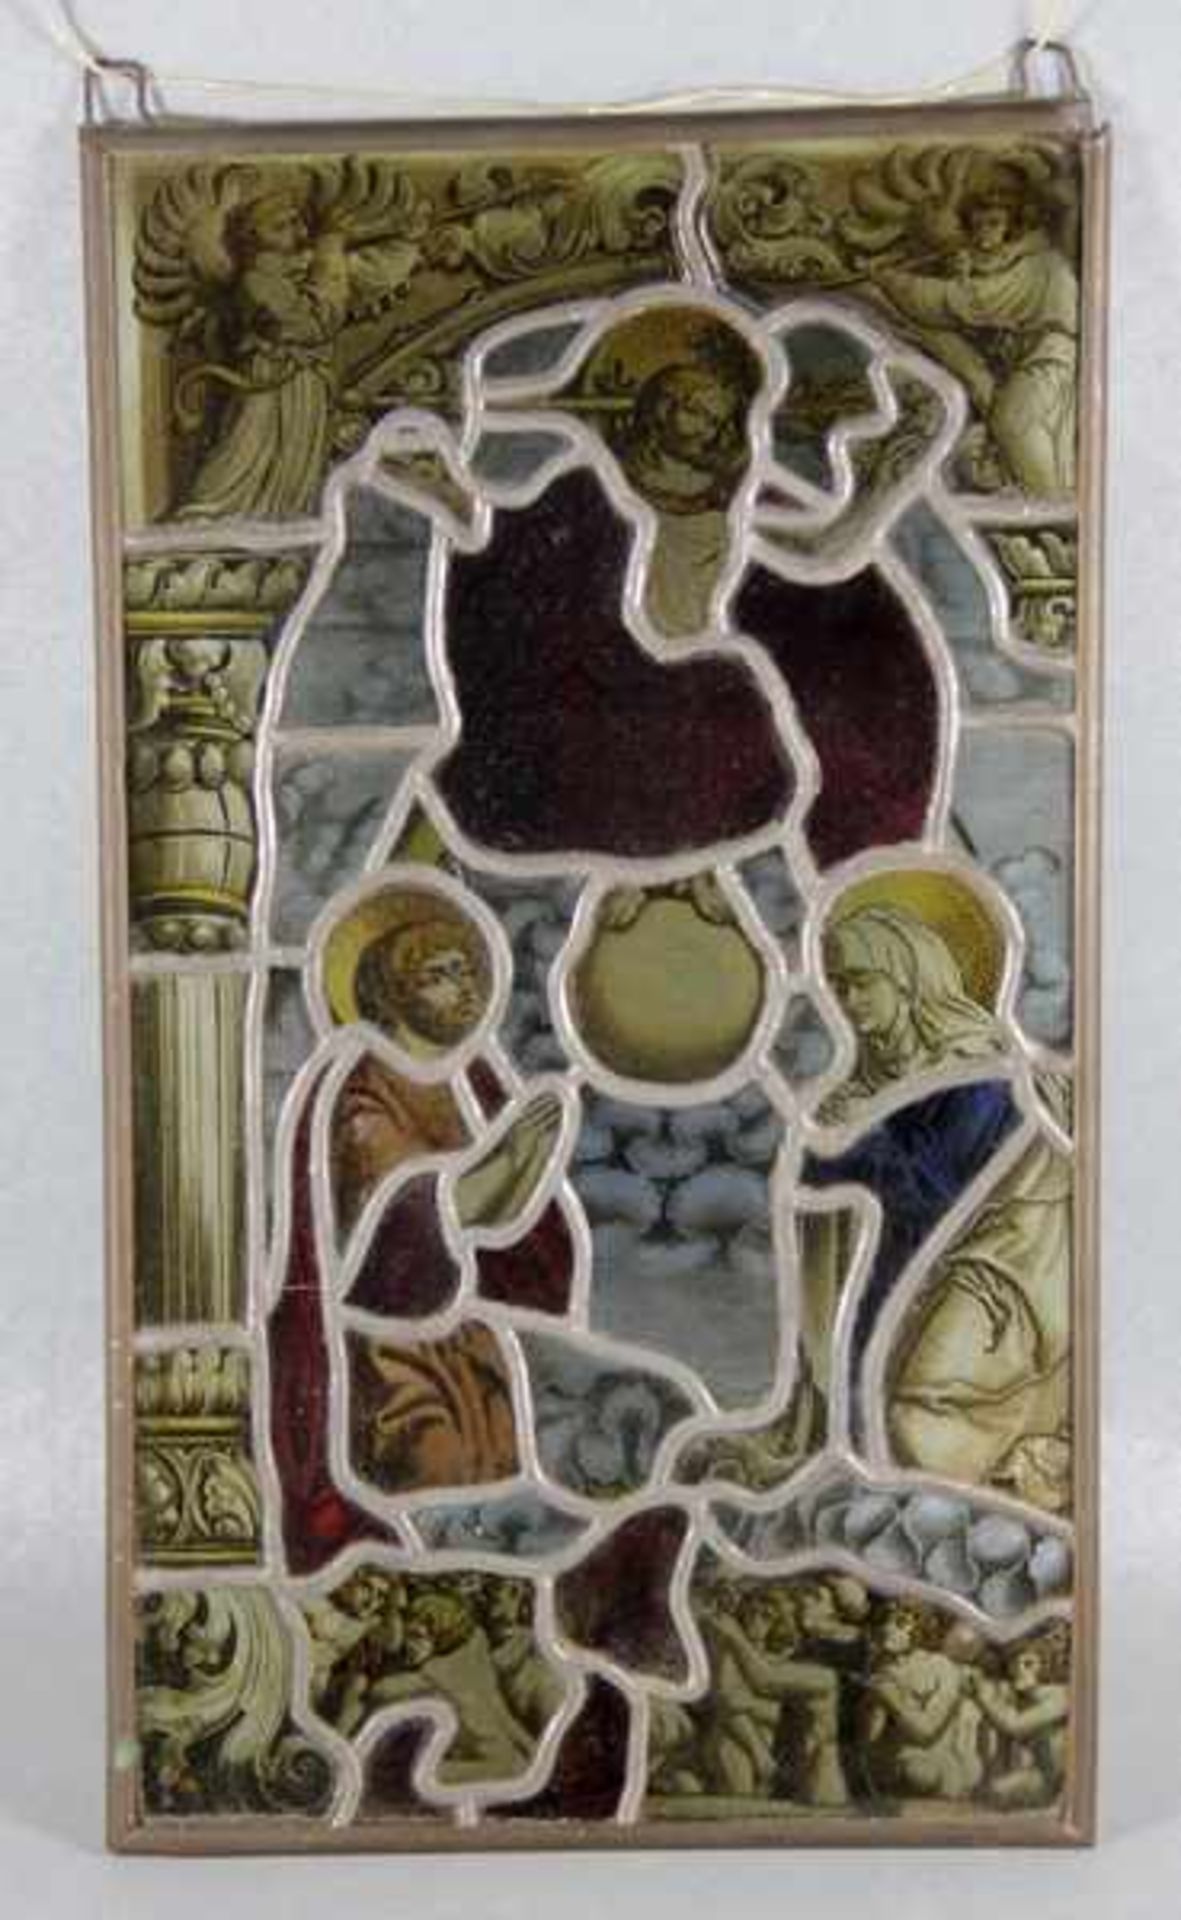 Glasbild18./19., Jhd., Glasbild, stellenw. farbiges Glas, feines schwarzes Motiv, Christus, Maria u.